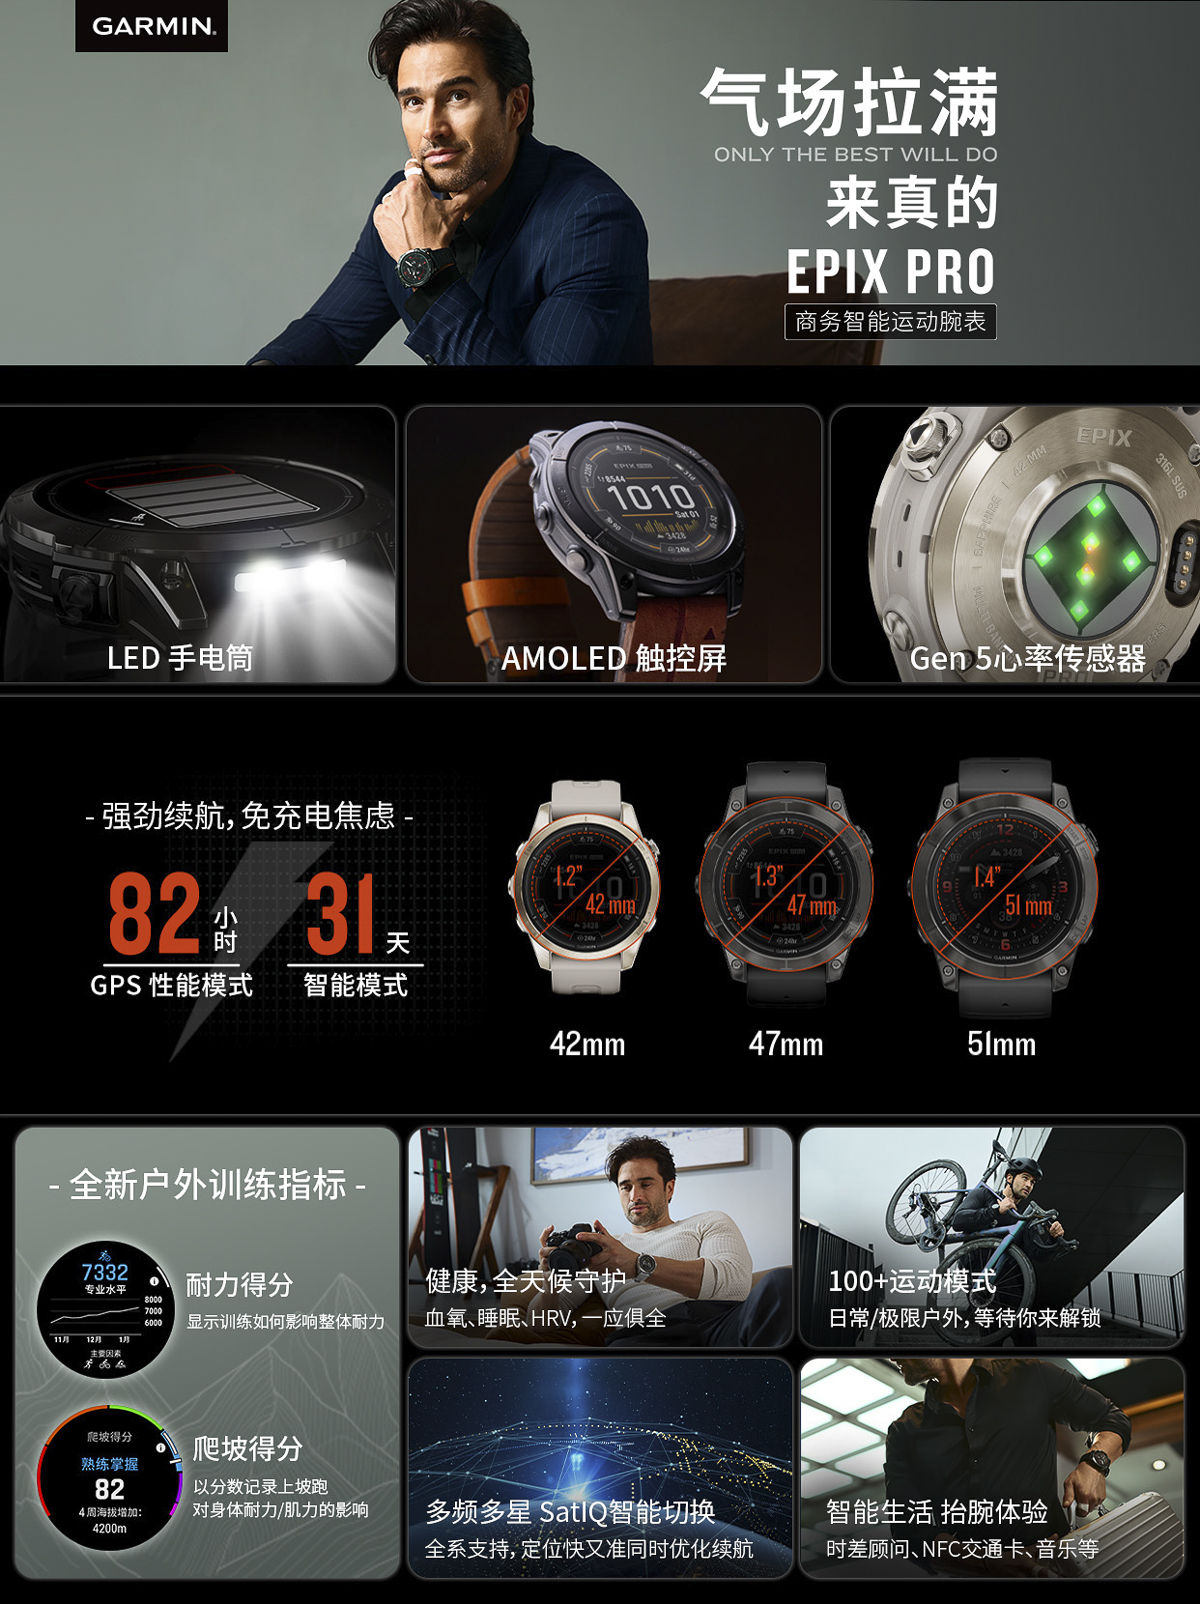 气场拉满   Garmin推出全新EPIX Pro运动腕表